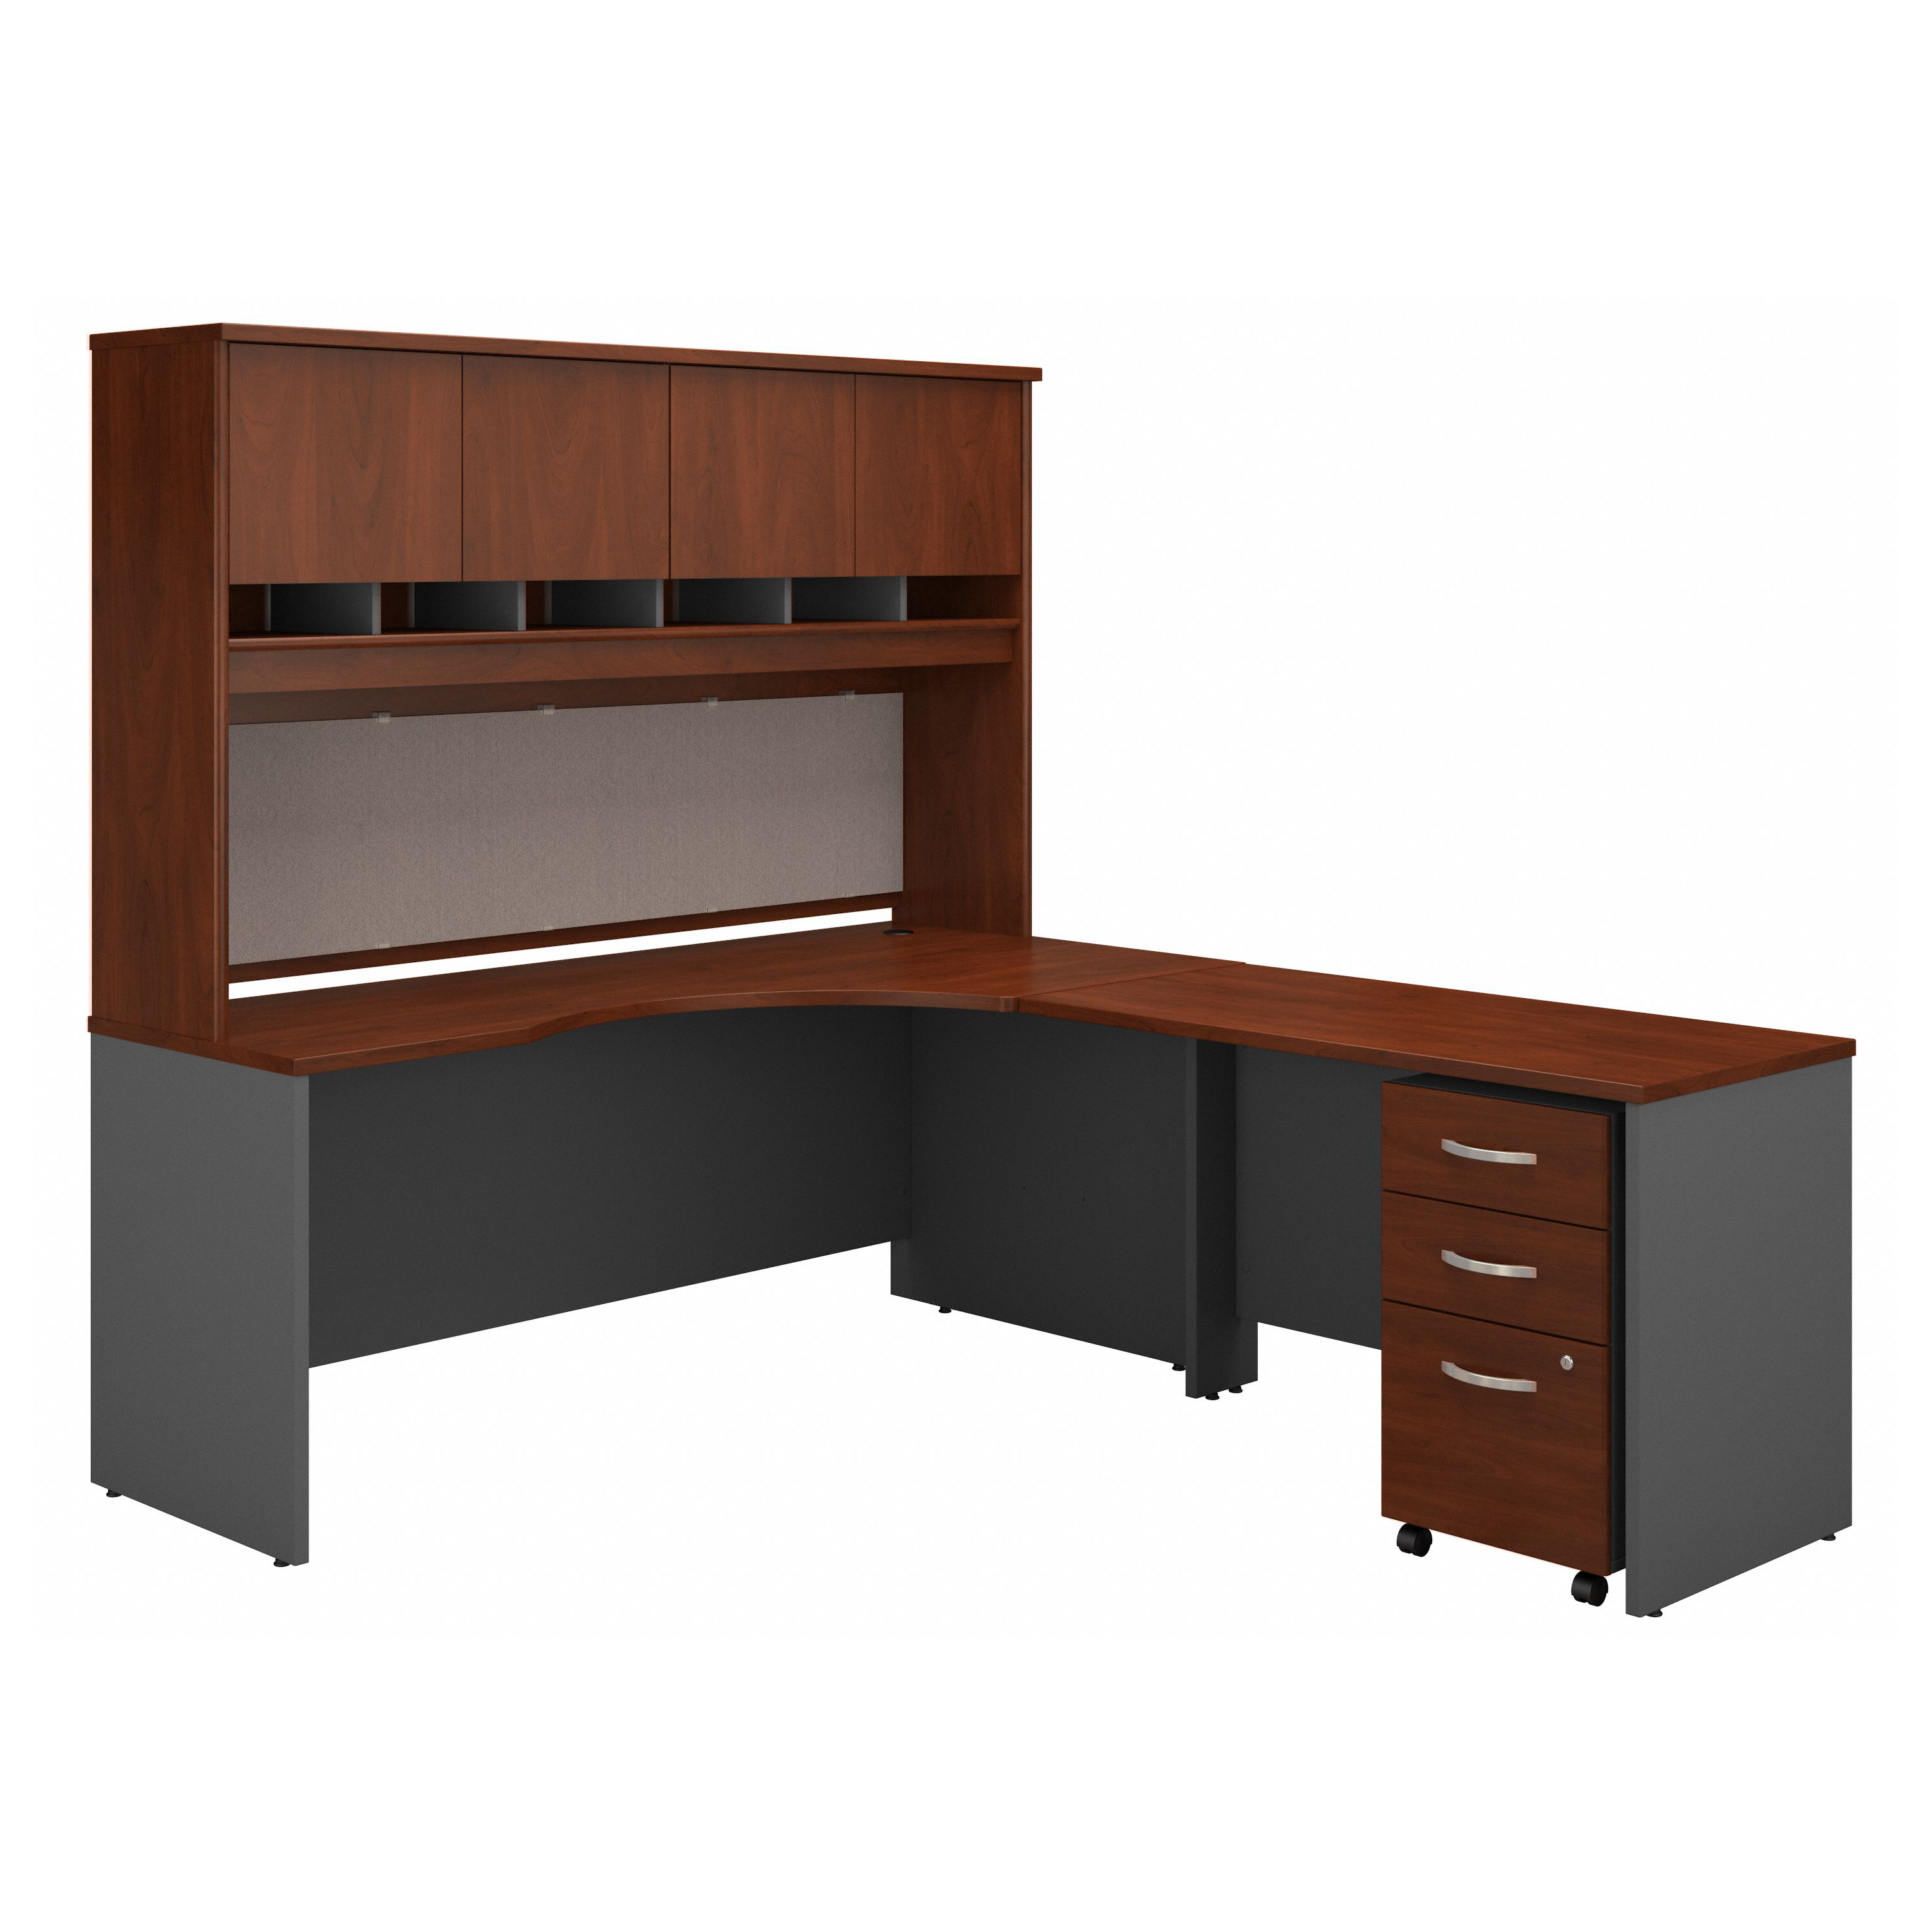 Shop Bush Business Furniture Series C 72W Right Handed Corner Desk with Hutch and Mobile File Cabinet 02 SRC087HCSU #color_hansen cherry/graphite gray